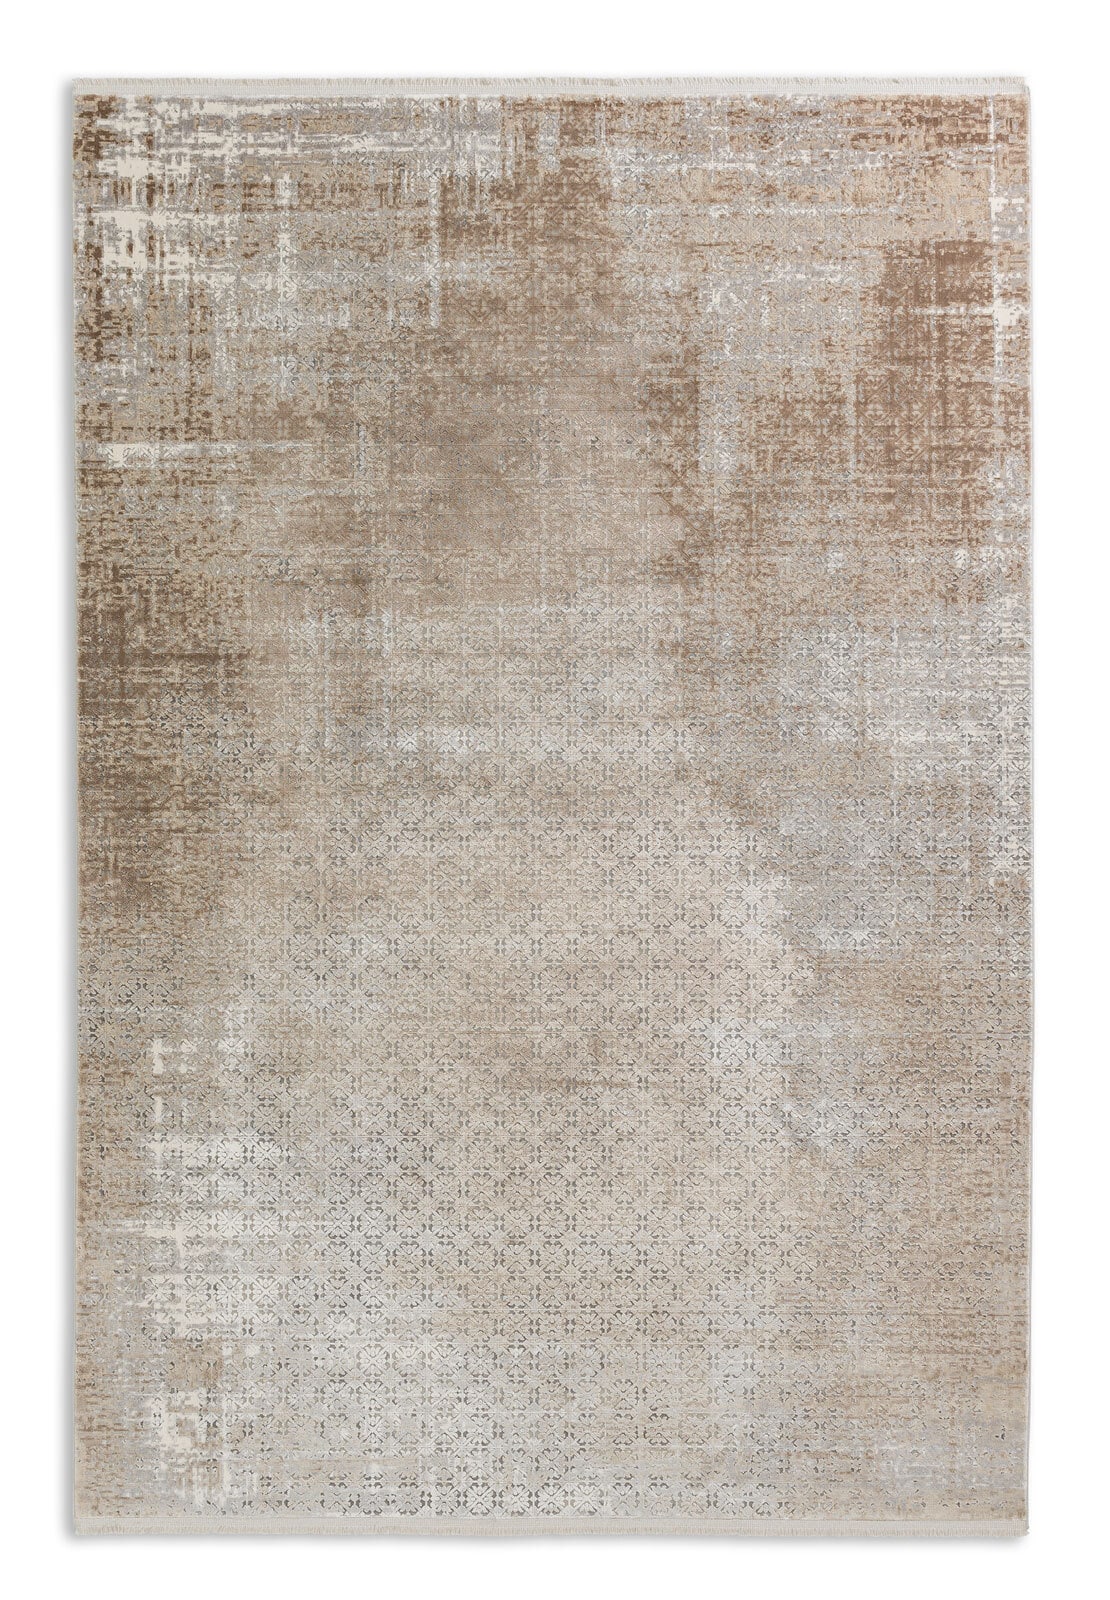 SCHÖNER WOHNEN-Kollektion Teppich VISION 200 x 290 cm beige 